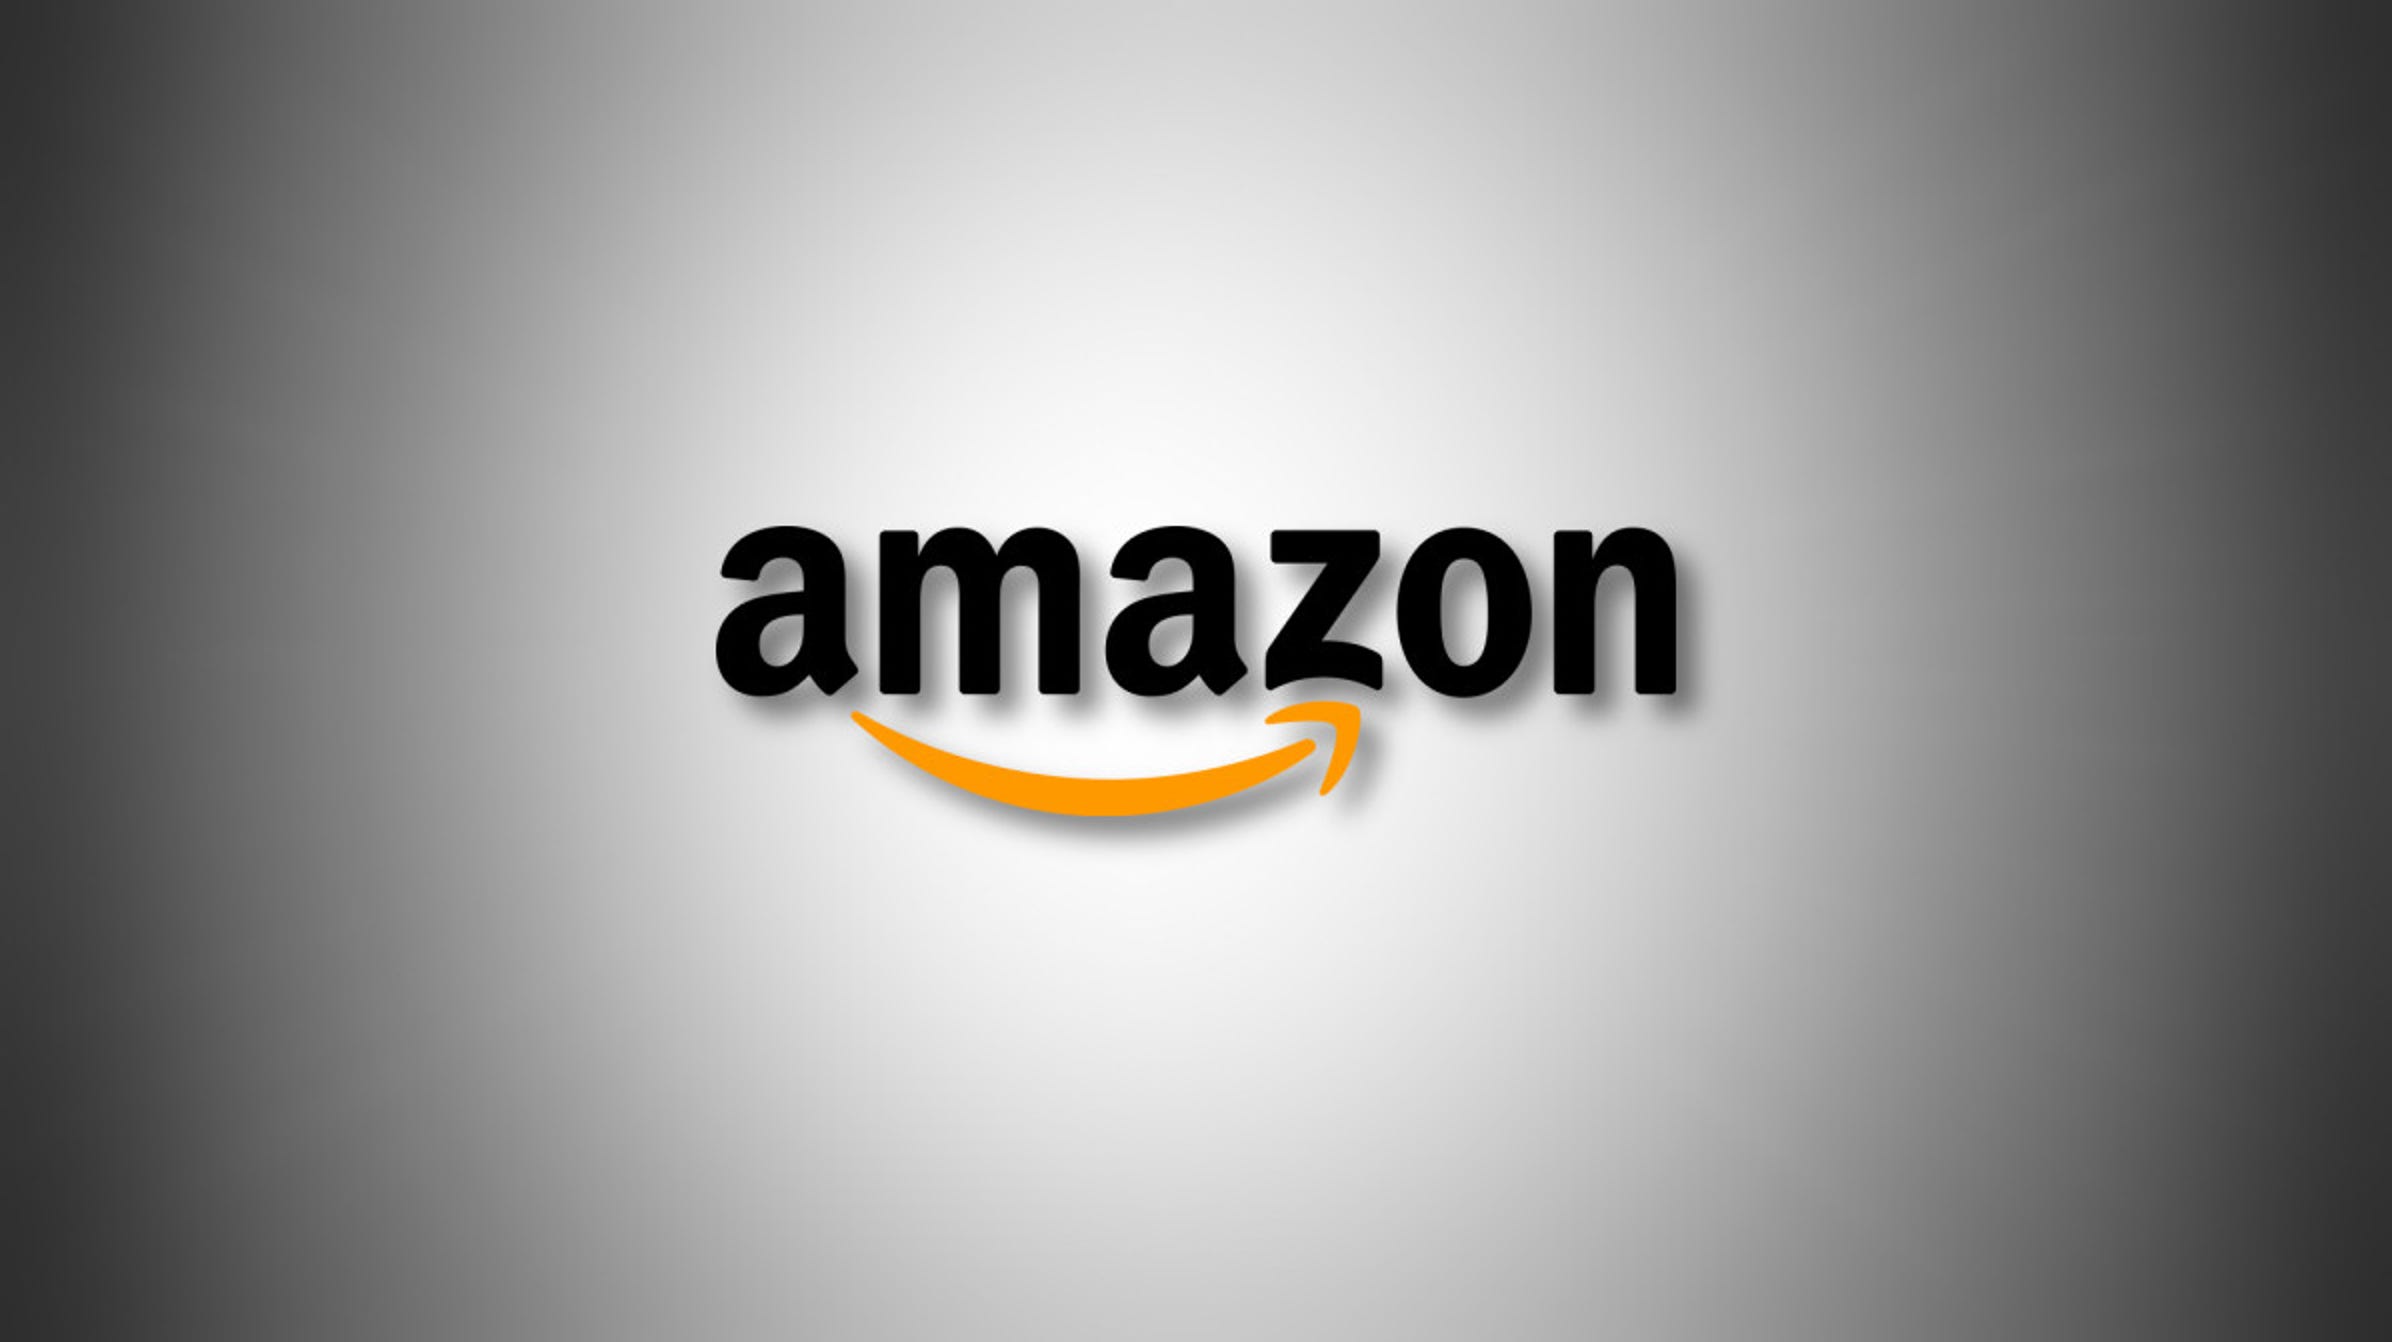 Amazon Veranstalten eines massiven Career Day, der bis zu 55.000 Mitarbeiter einstellt 371